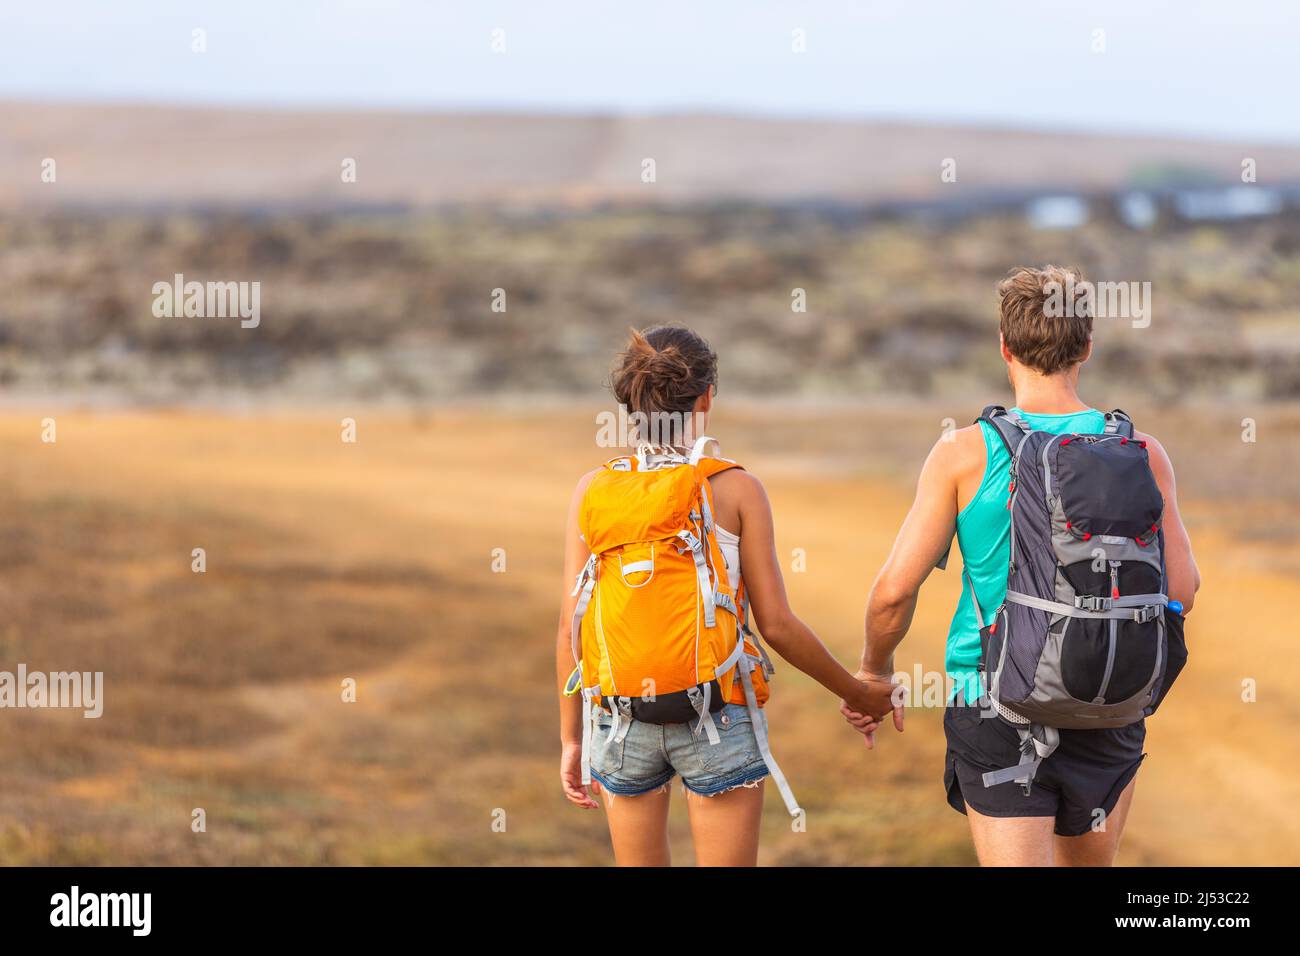 Escursionisti coppia turisti che camminano insieme con zaini che tengono le mani camminare in amore. I giovani amanti viaggiatori in viaggio avventura trekking escursione Wanderlust Foto Stock